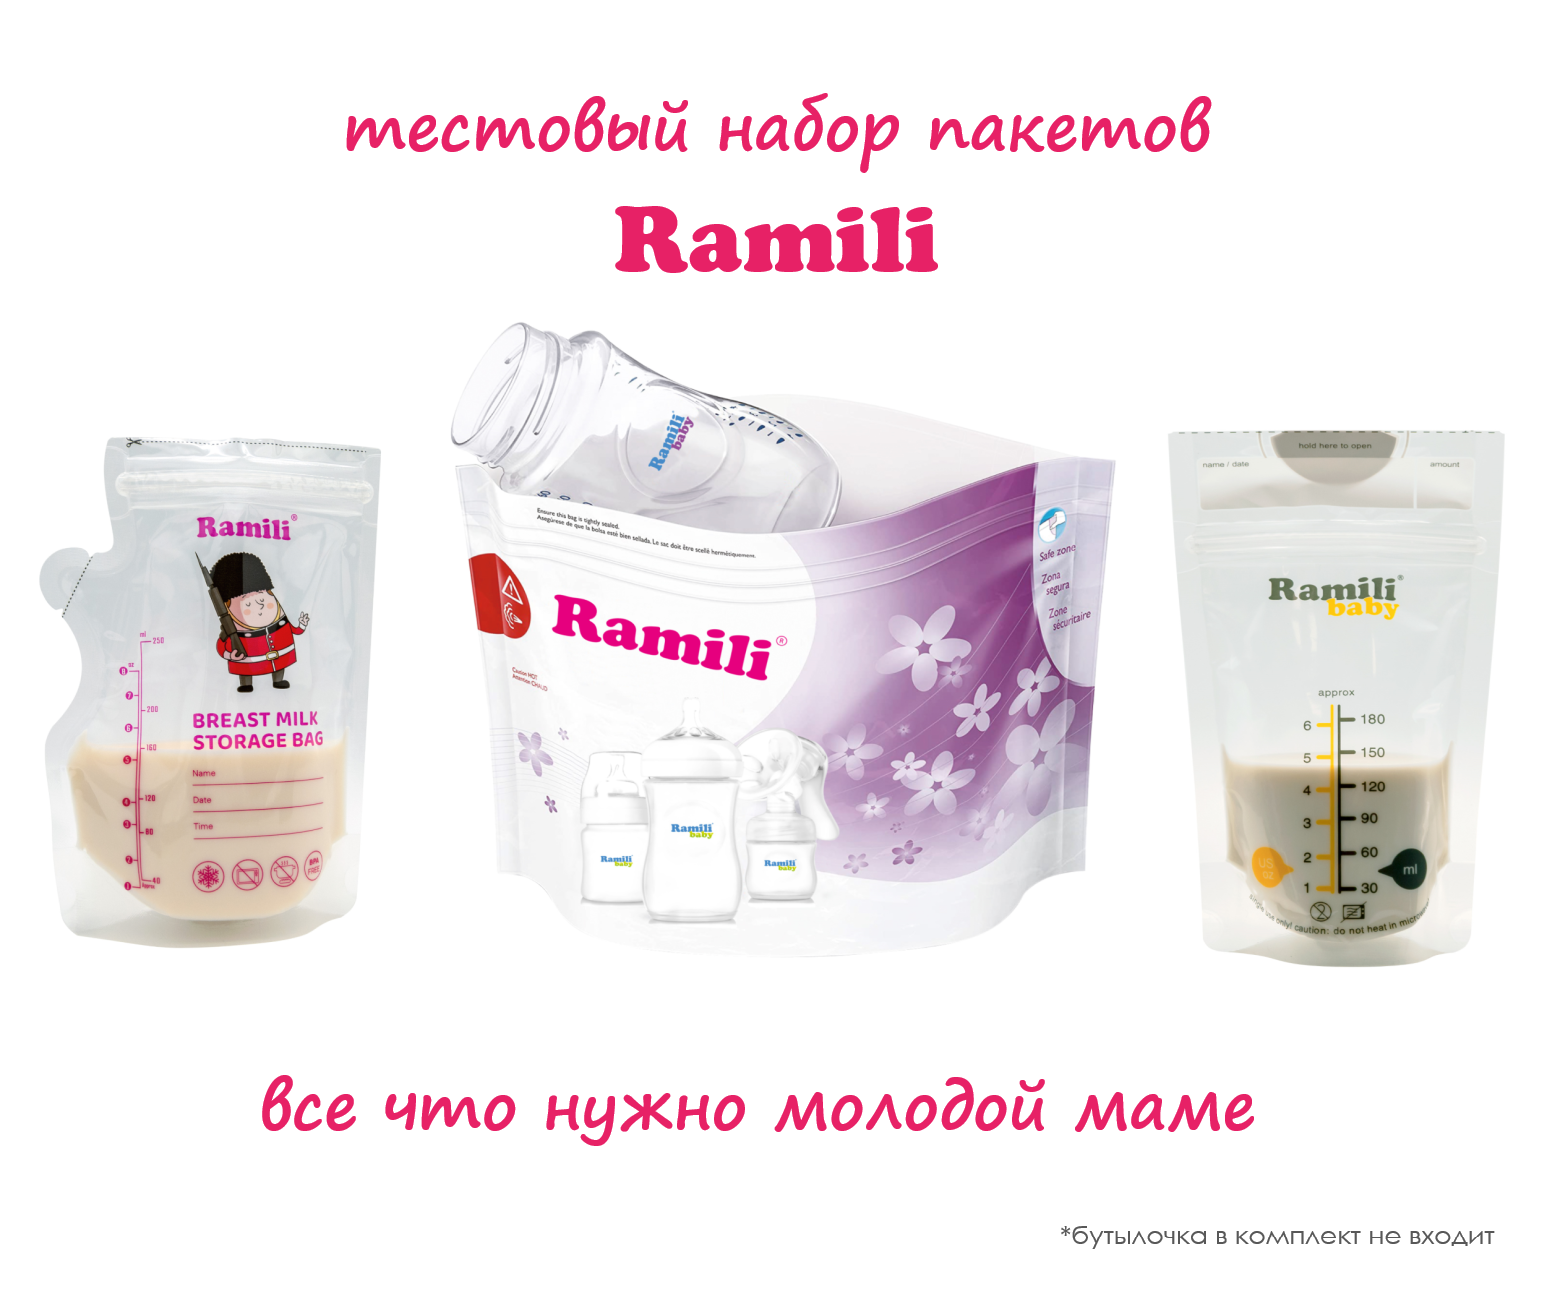 Пакеты для хранения грудного молока Ramili BMB30BMB40RSB105 dr brown s пакеты для хранения грудного молока 180 мл 25 шт